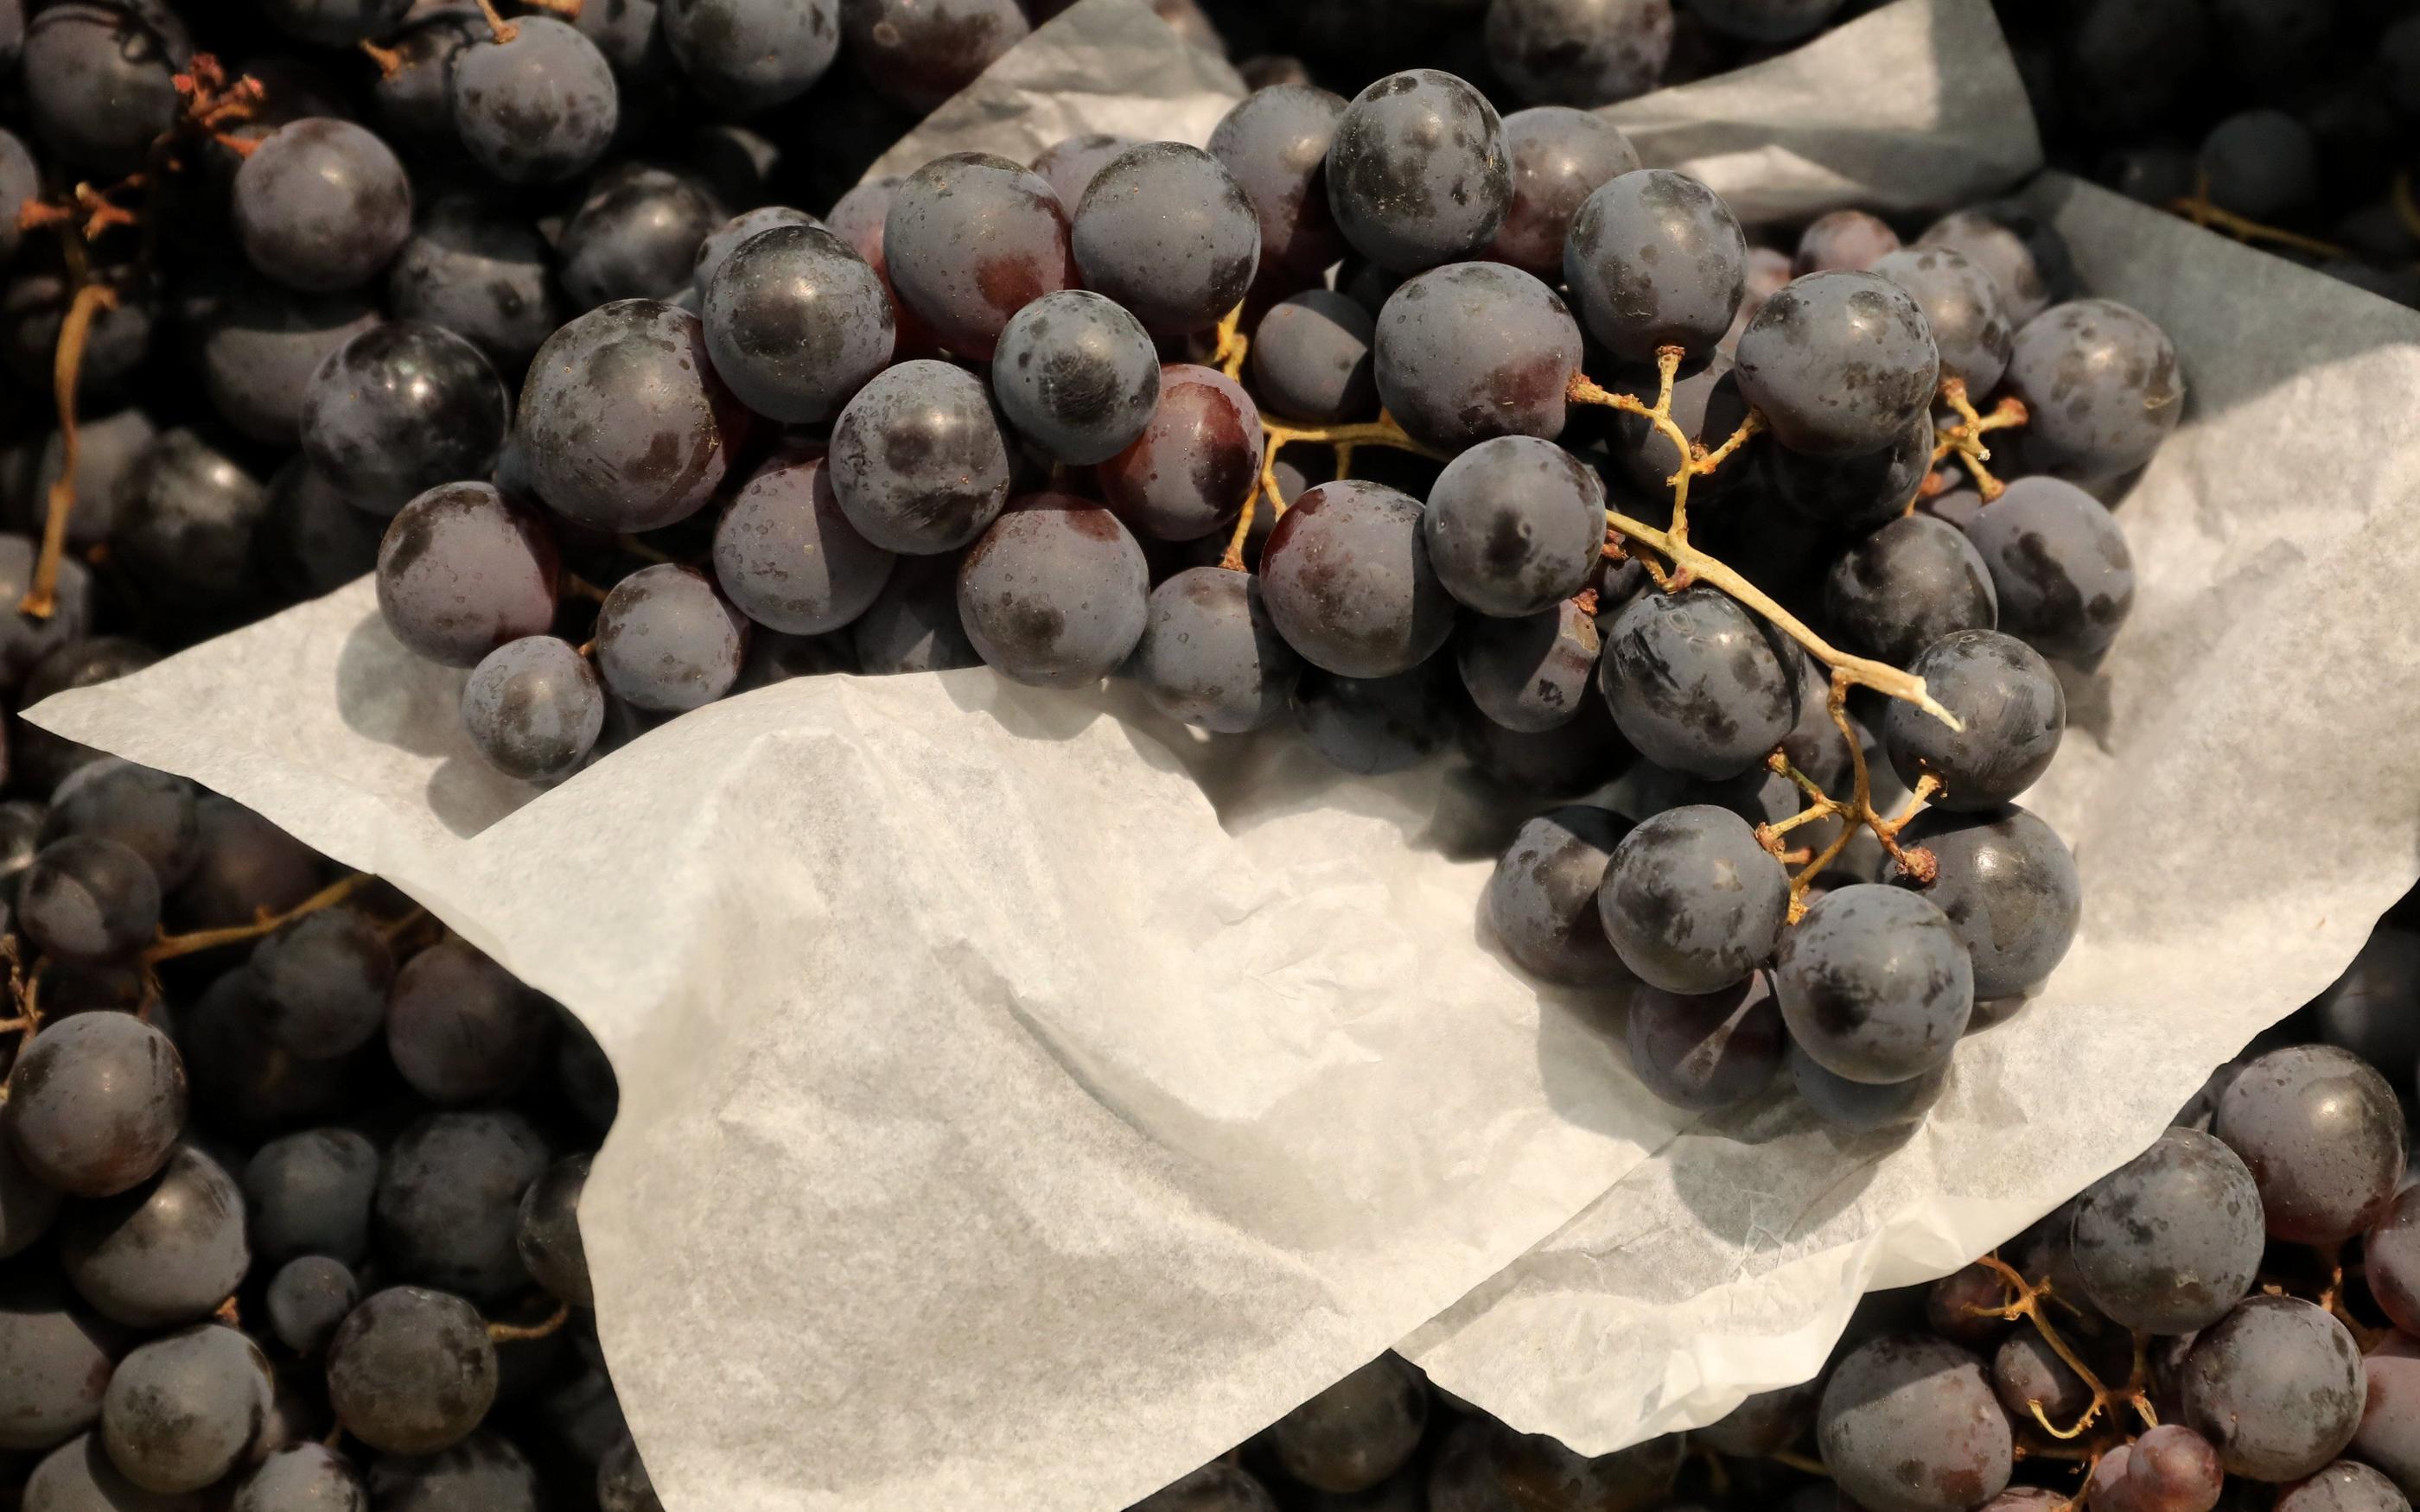 Le raisin regorge d’antioxydants bénéfiques à la santé. LP/Arnaud Journois